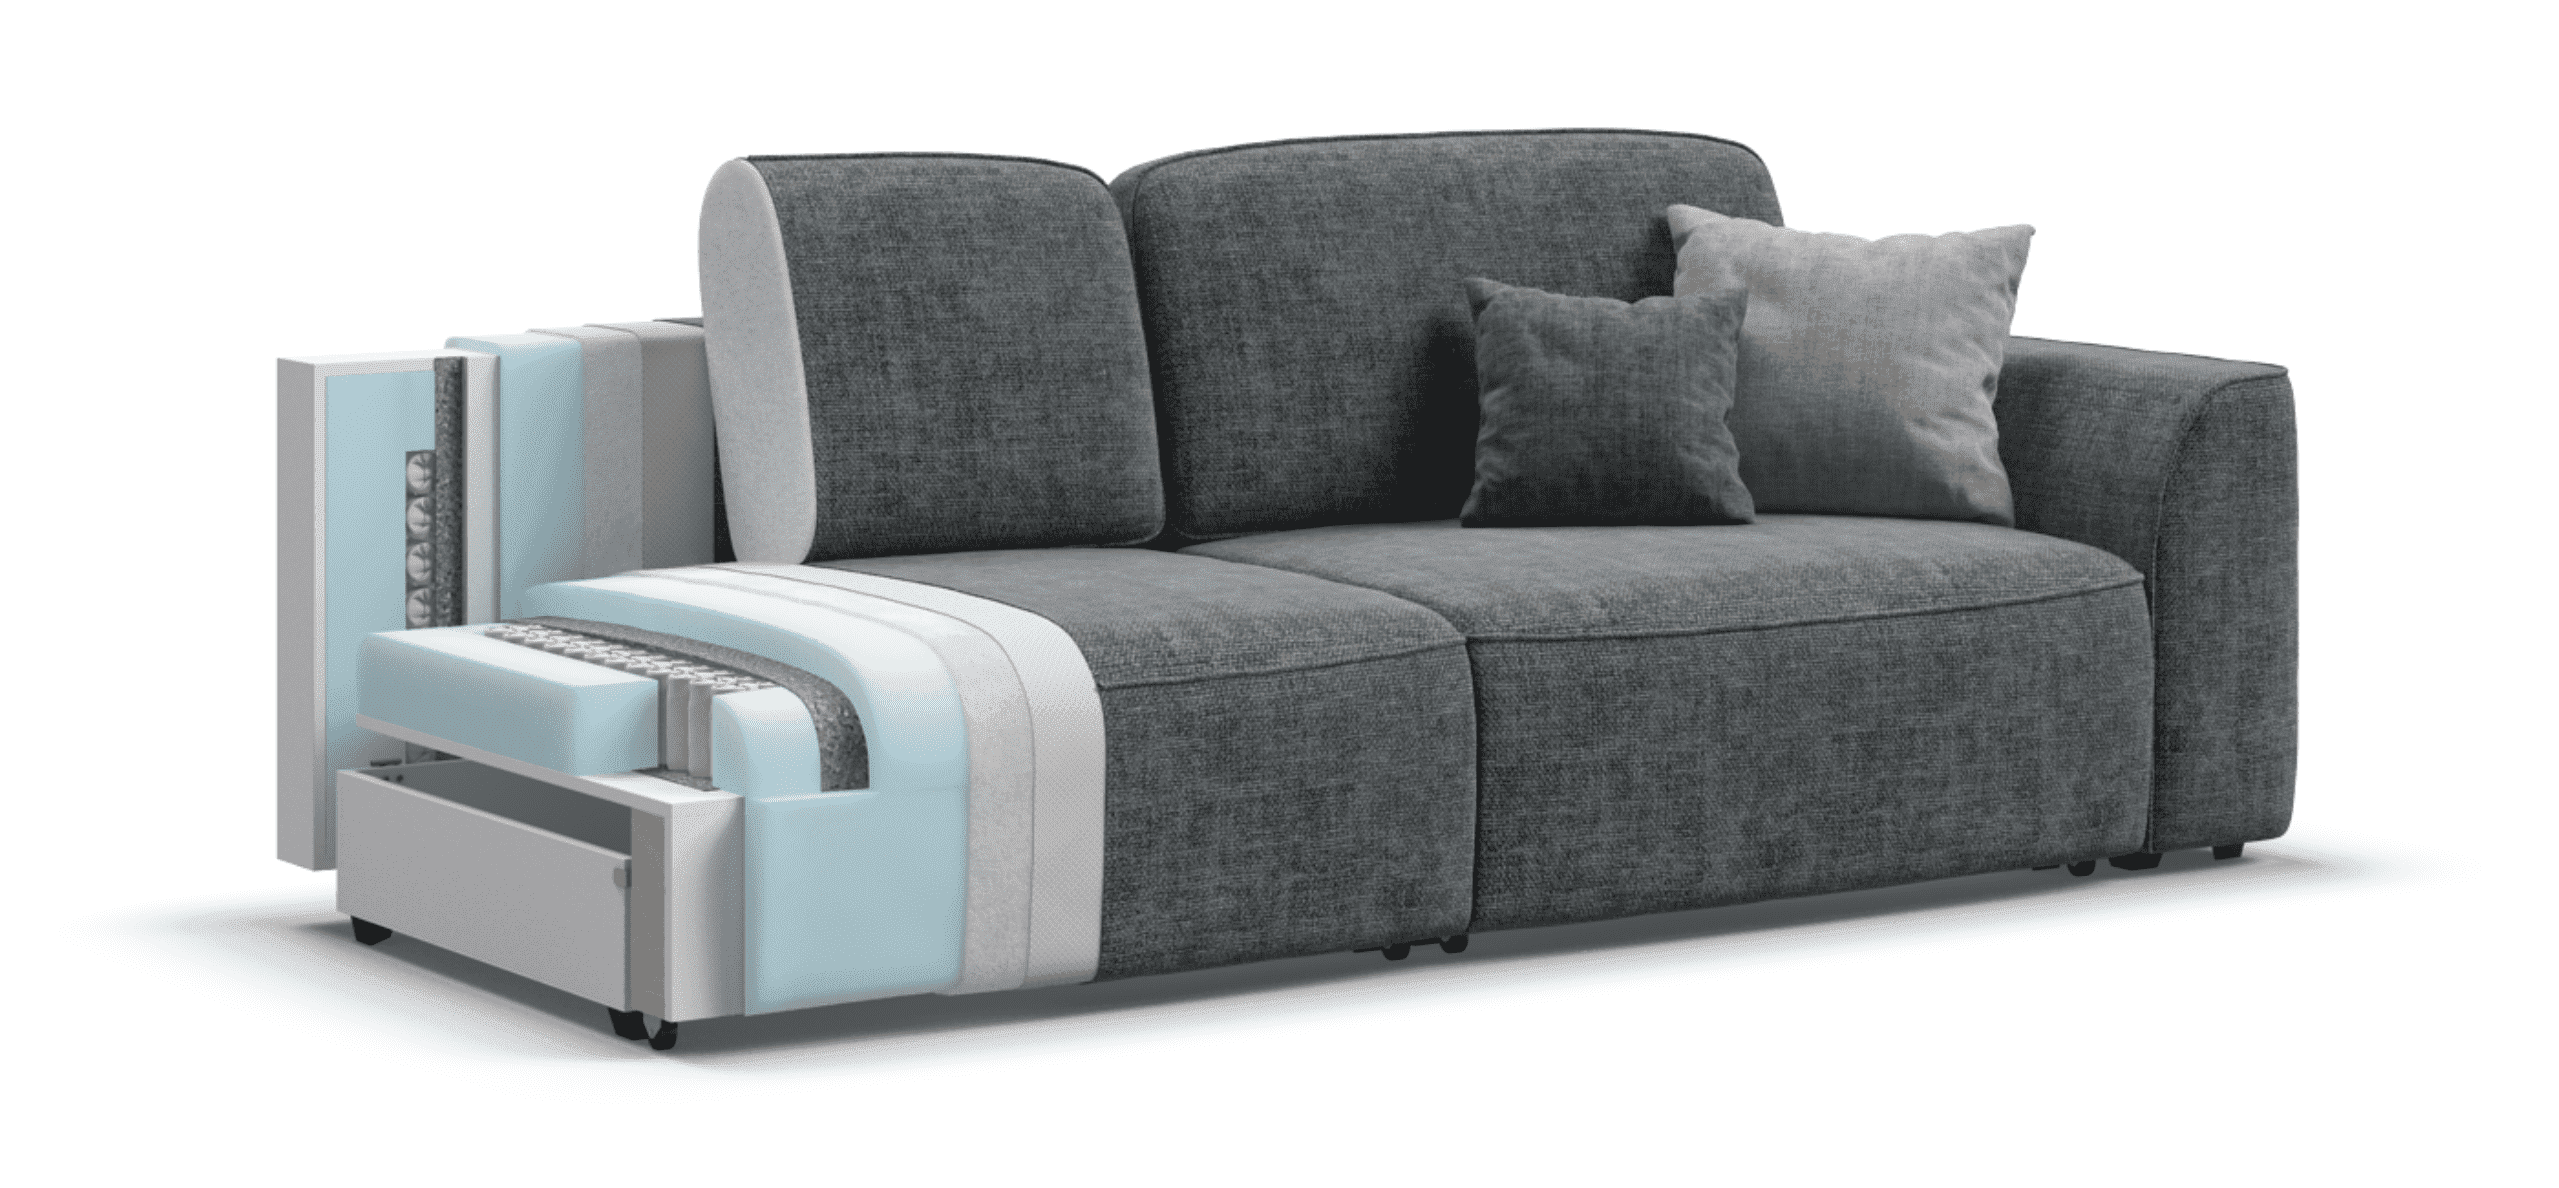 Модульный диван king se ткань шенилл, цвет серый, 250x115x82 см